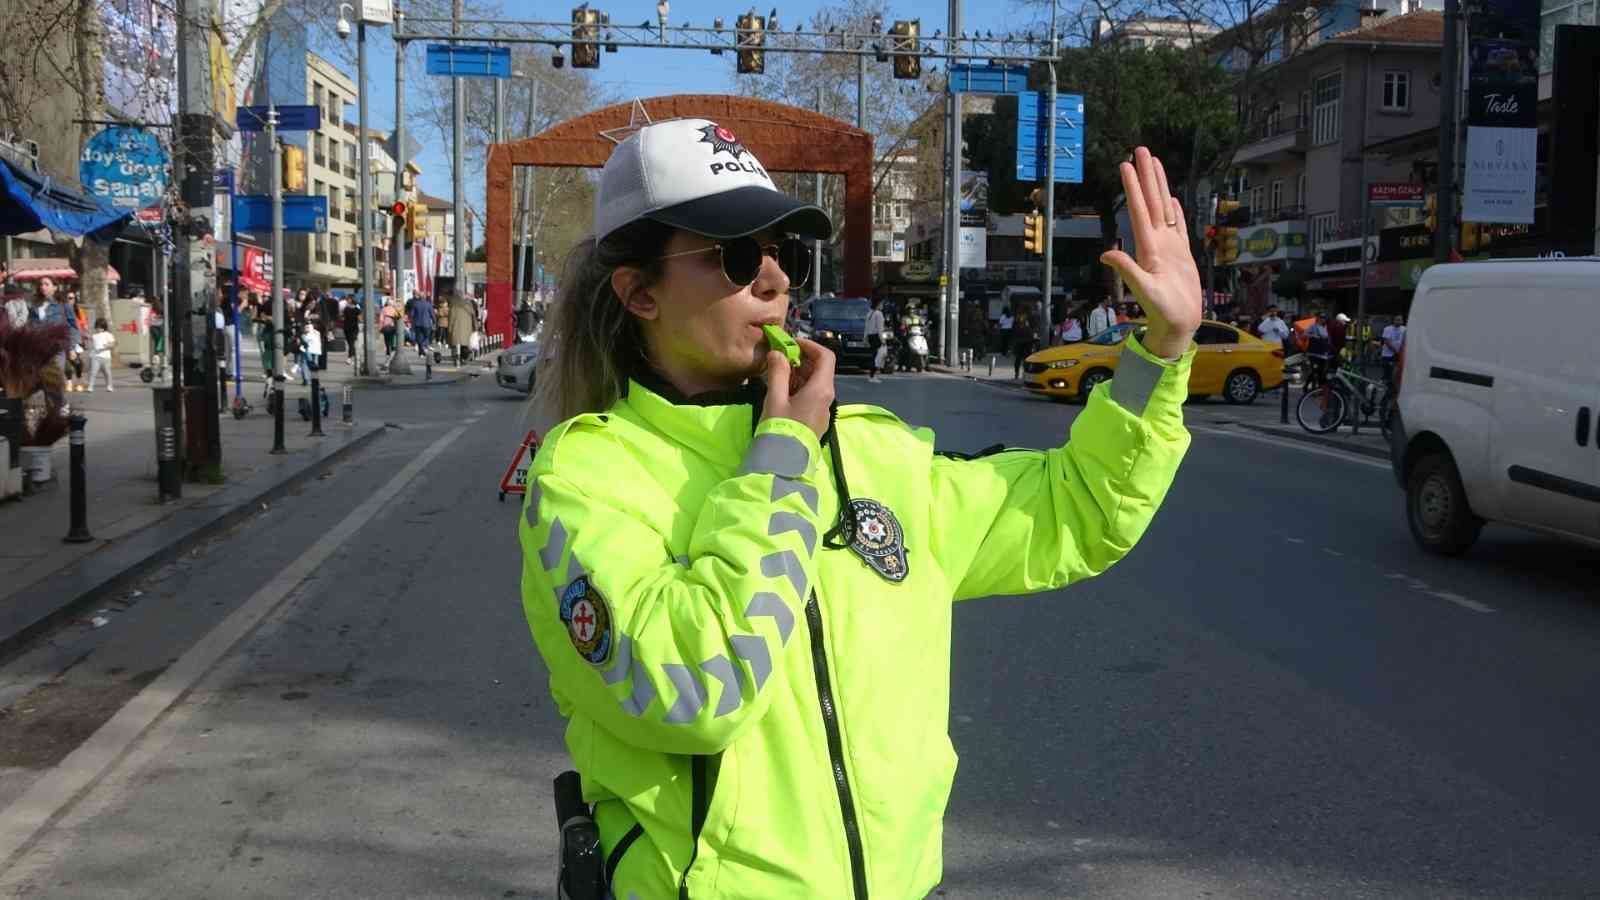 Kadıköy Bağdat Caddesi’nde görevli kadın trafik polisleri, araç yoğunluğunun yaşandığı ana arterlerde, trafik düzenini sağlamak için özveriyle ...